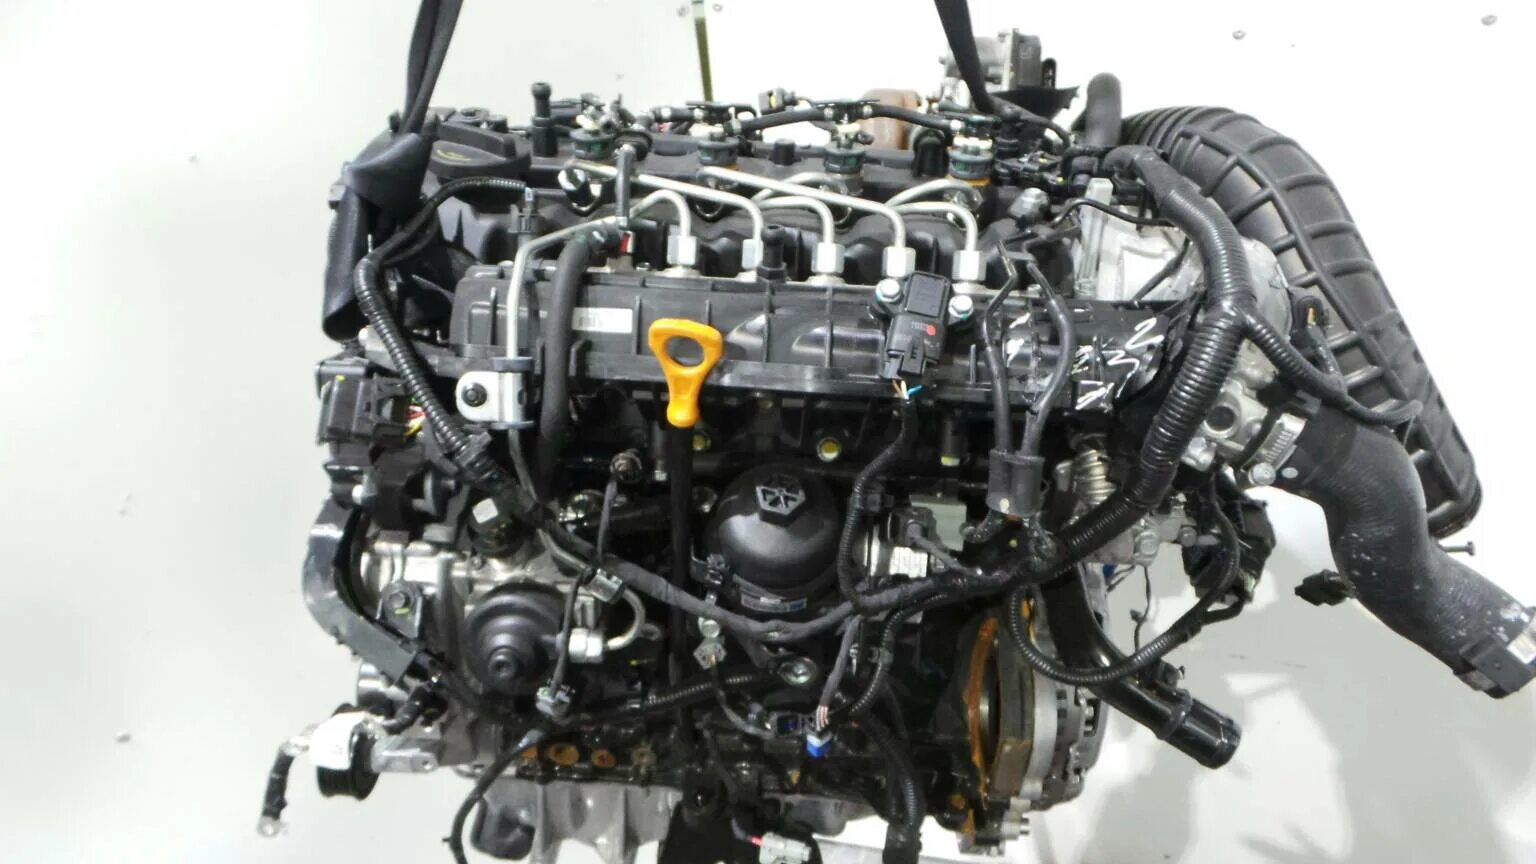 Двигатель нового сид. Двигатель Киа СИД 1.6. D4fb 1.6 CRDI. Kia Ceed 1.6 CRDI. Двигатель Киа СИД 1.